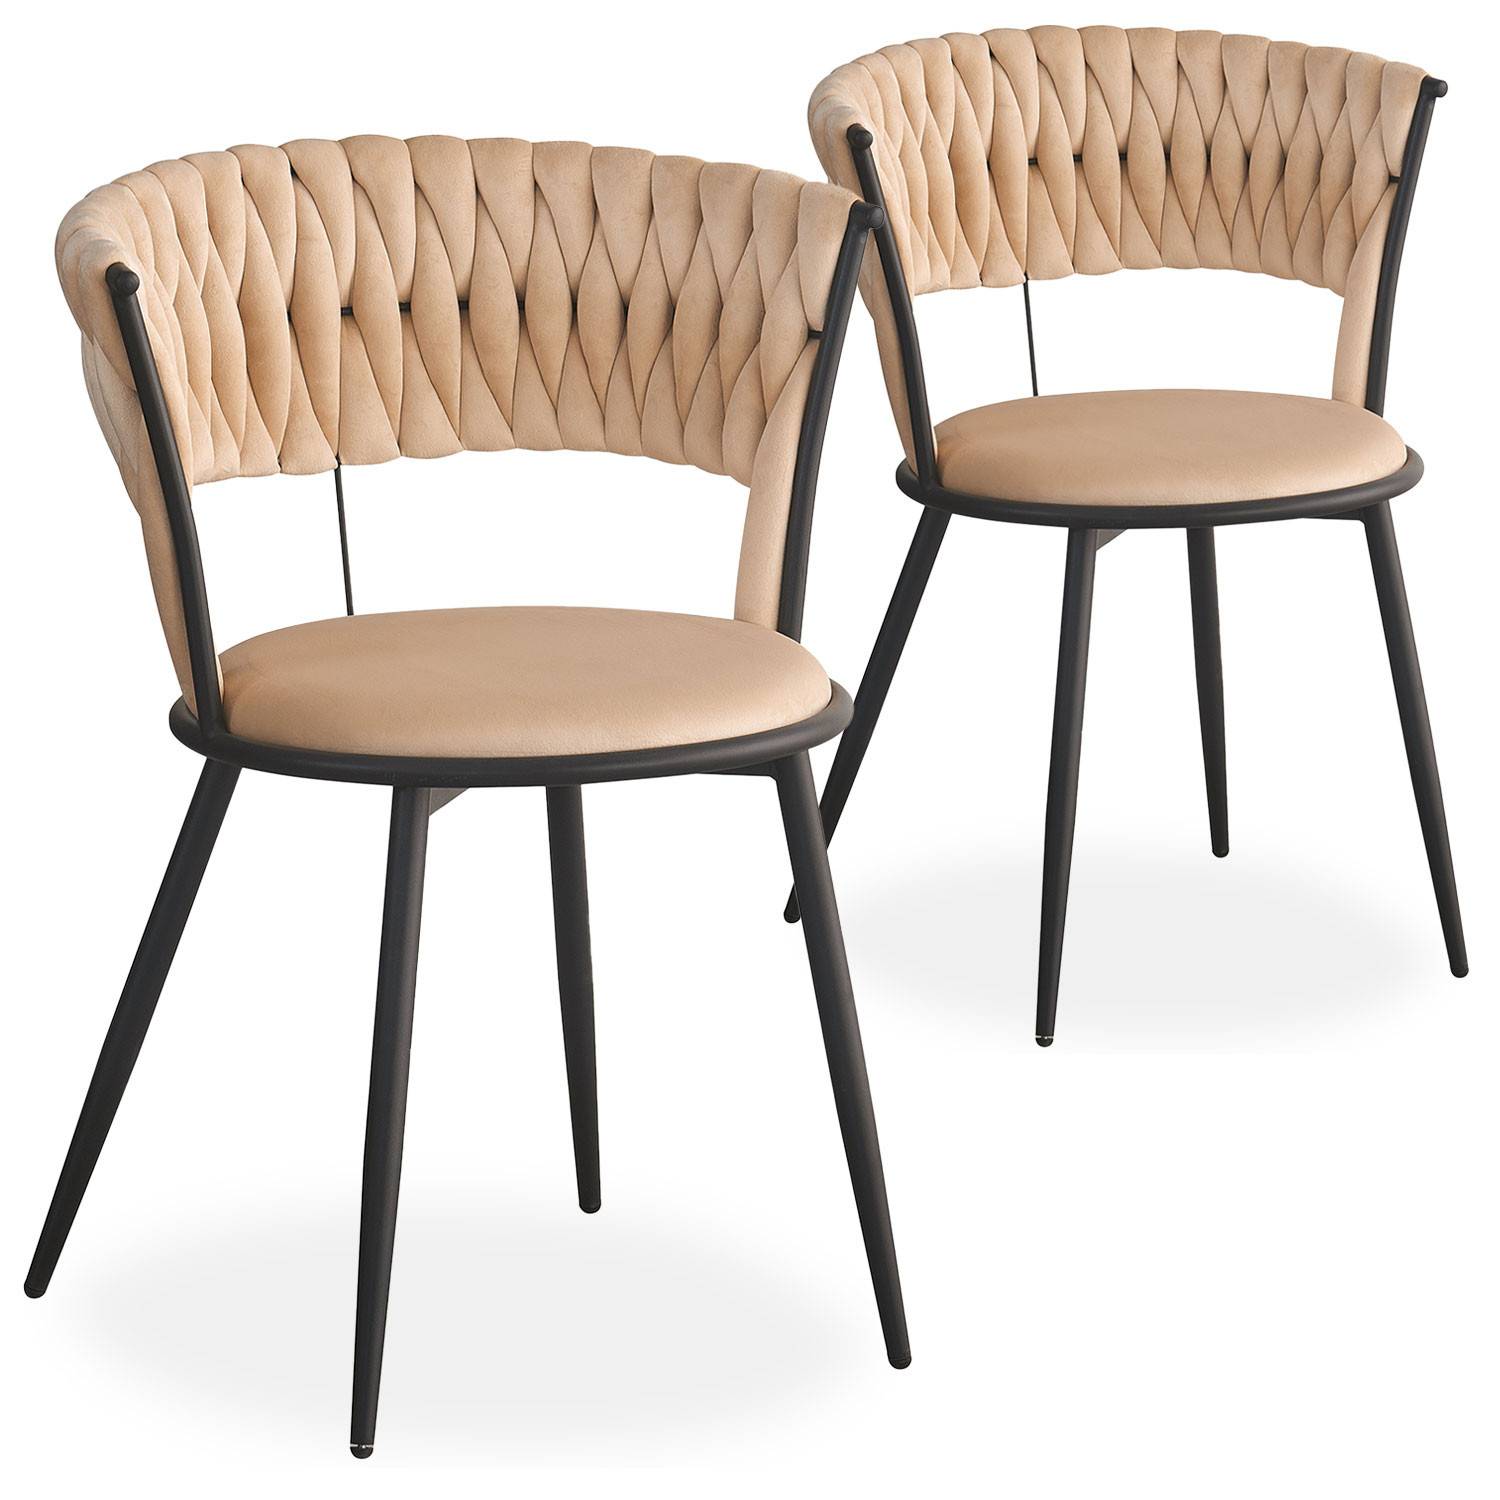 Lote de 2 sillas redondas Varadian de terciopelo beige y metal negro